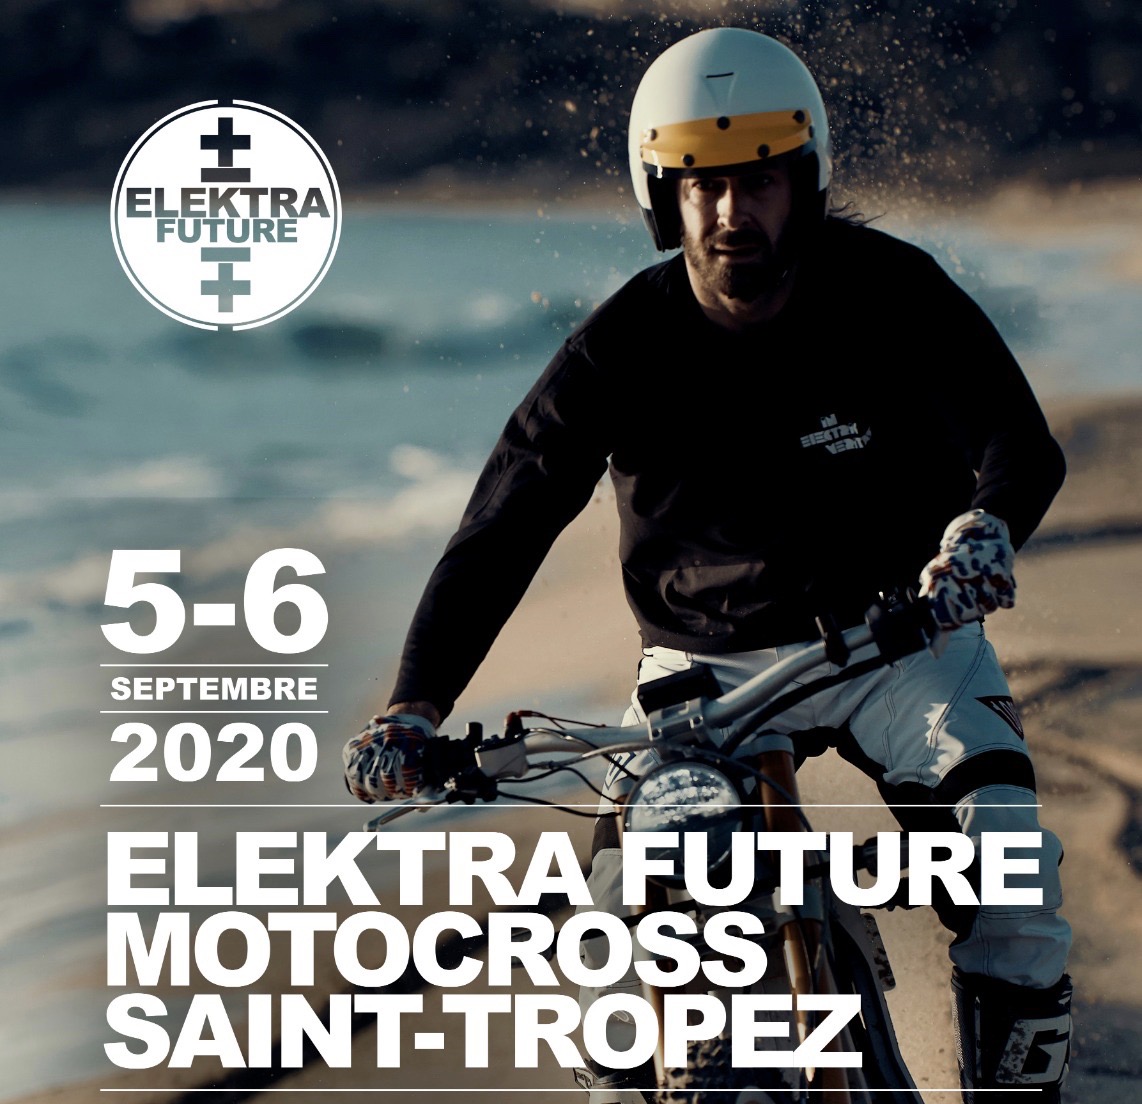 Elektrafuture Elektra Future St Tropez